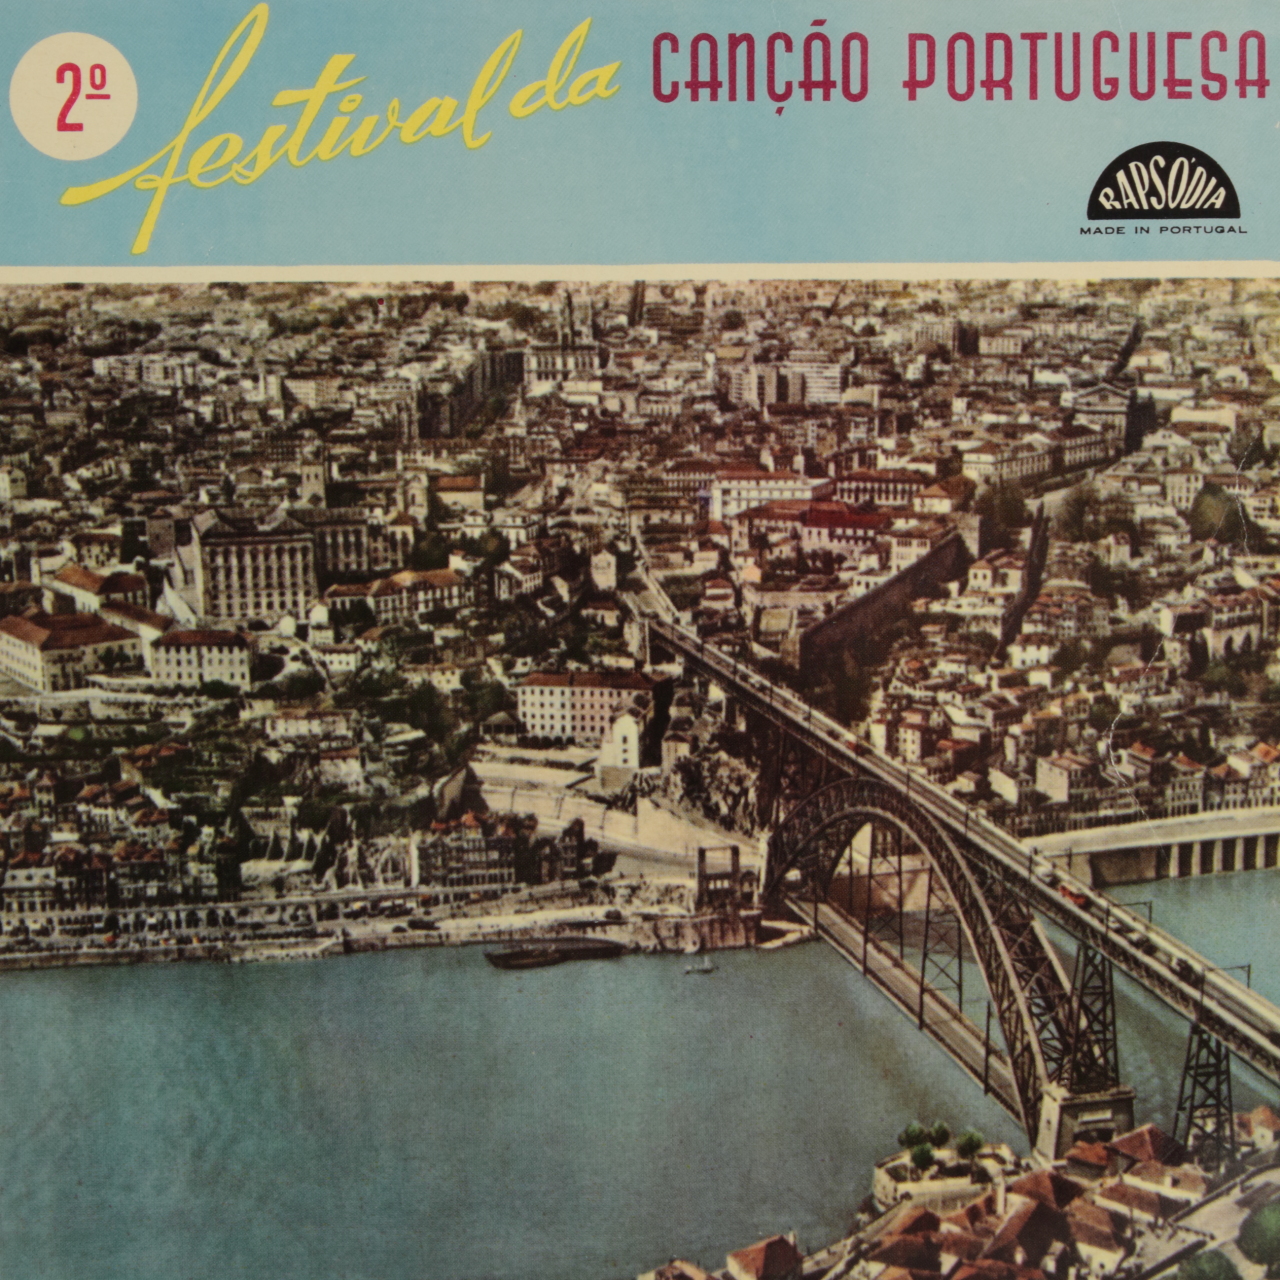 2º Festival da Canção Portuguesa